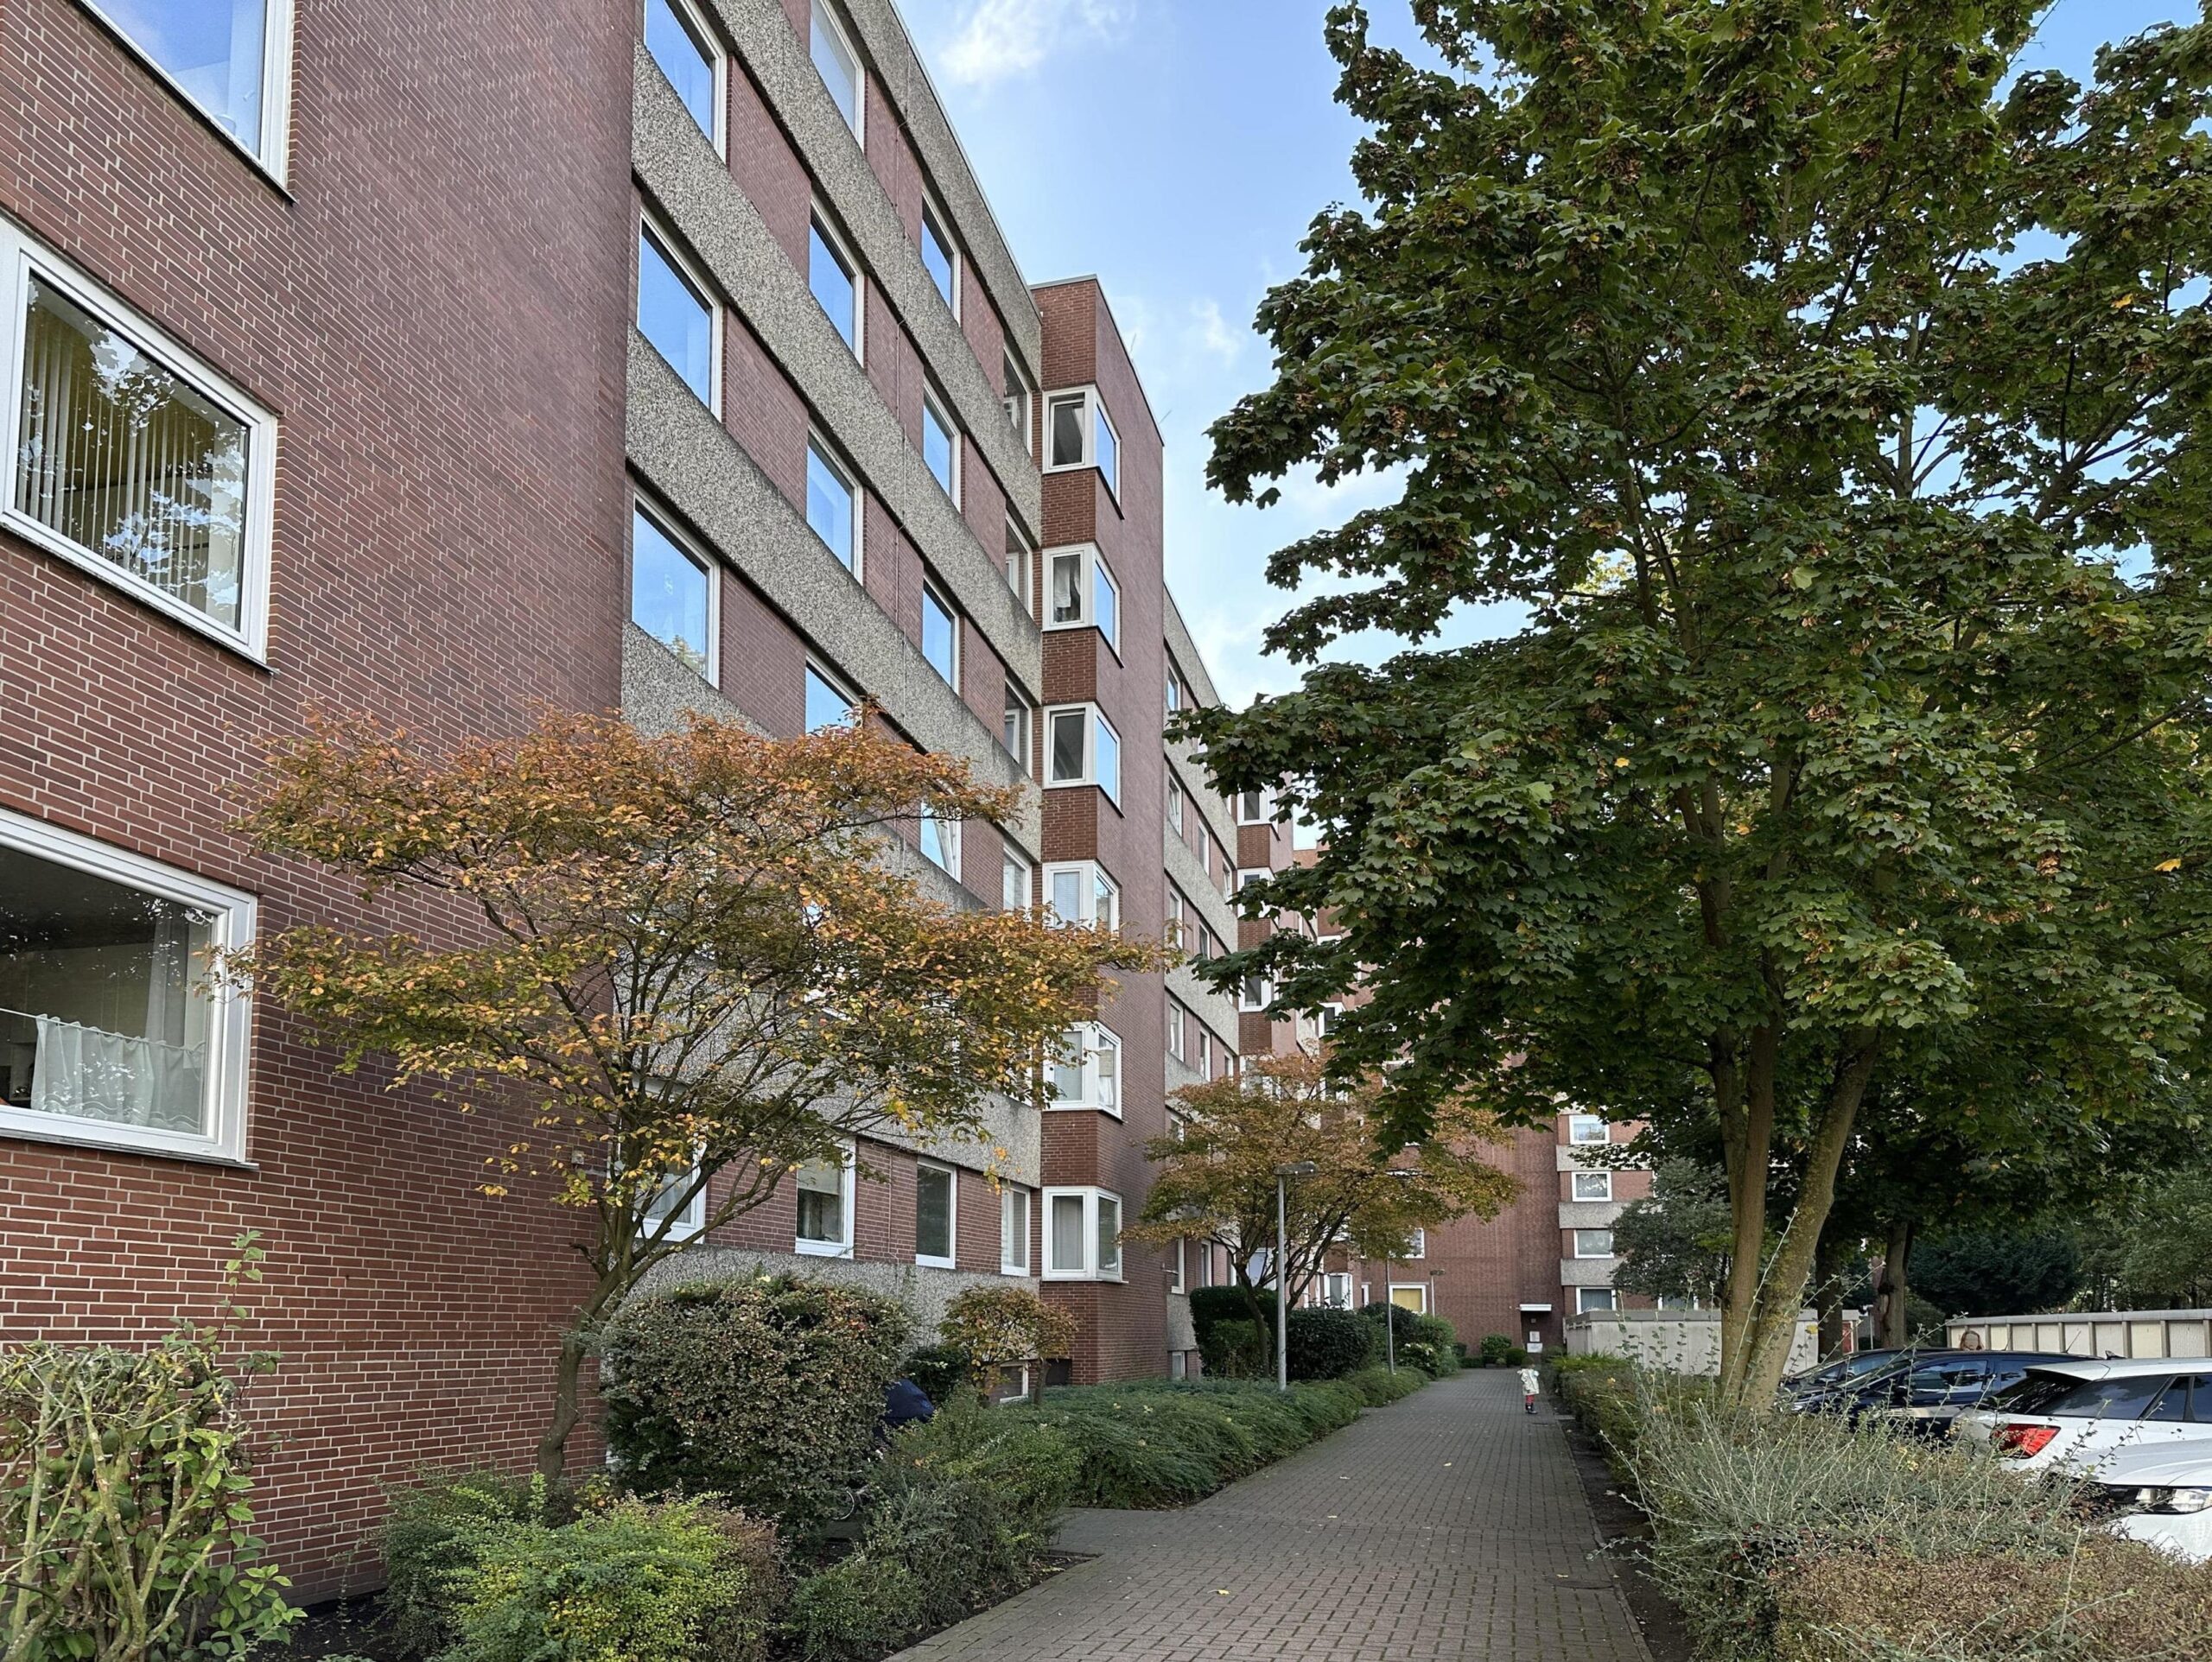 Geräumige 2,5-Zimmer-Wohnung mit Loggia in Hannover-Anderten, 30559 Hannover, Etagenwohnung